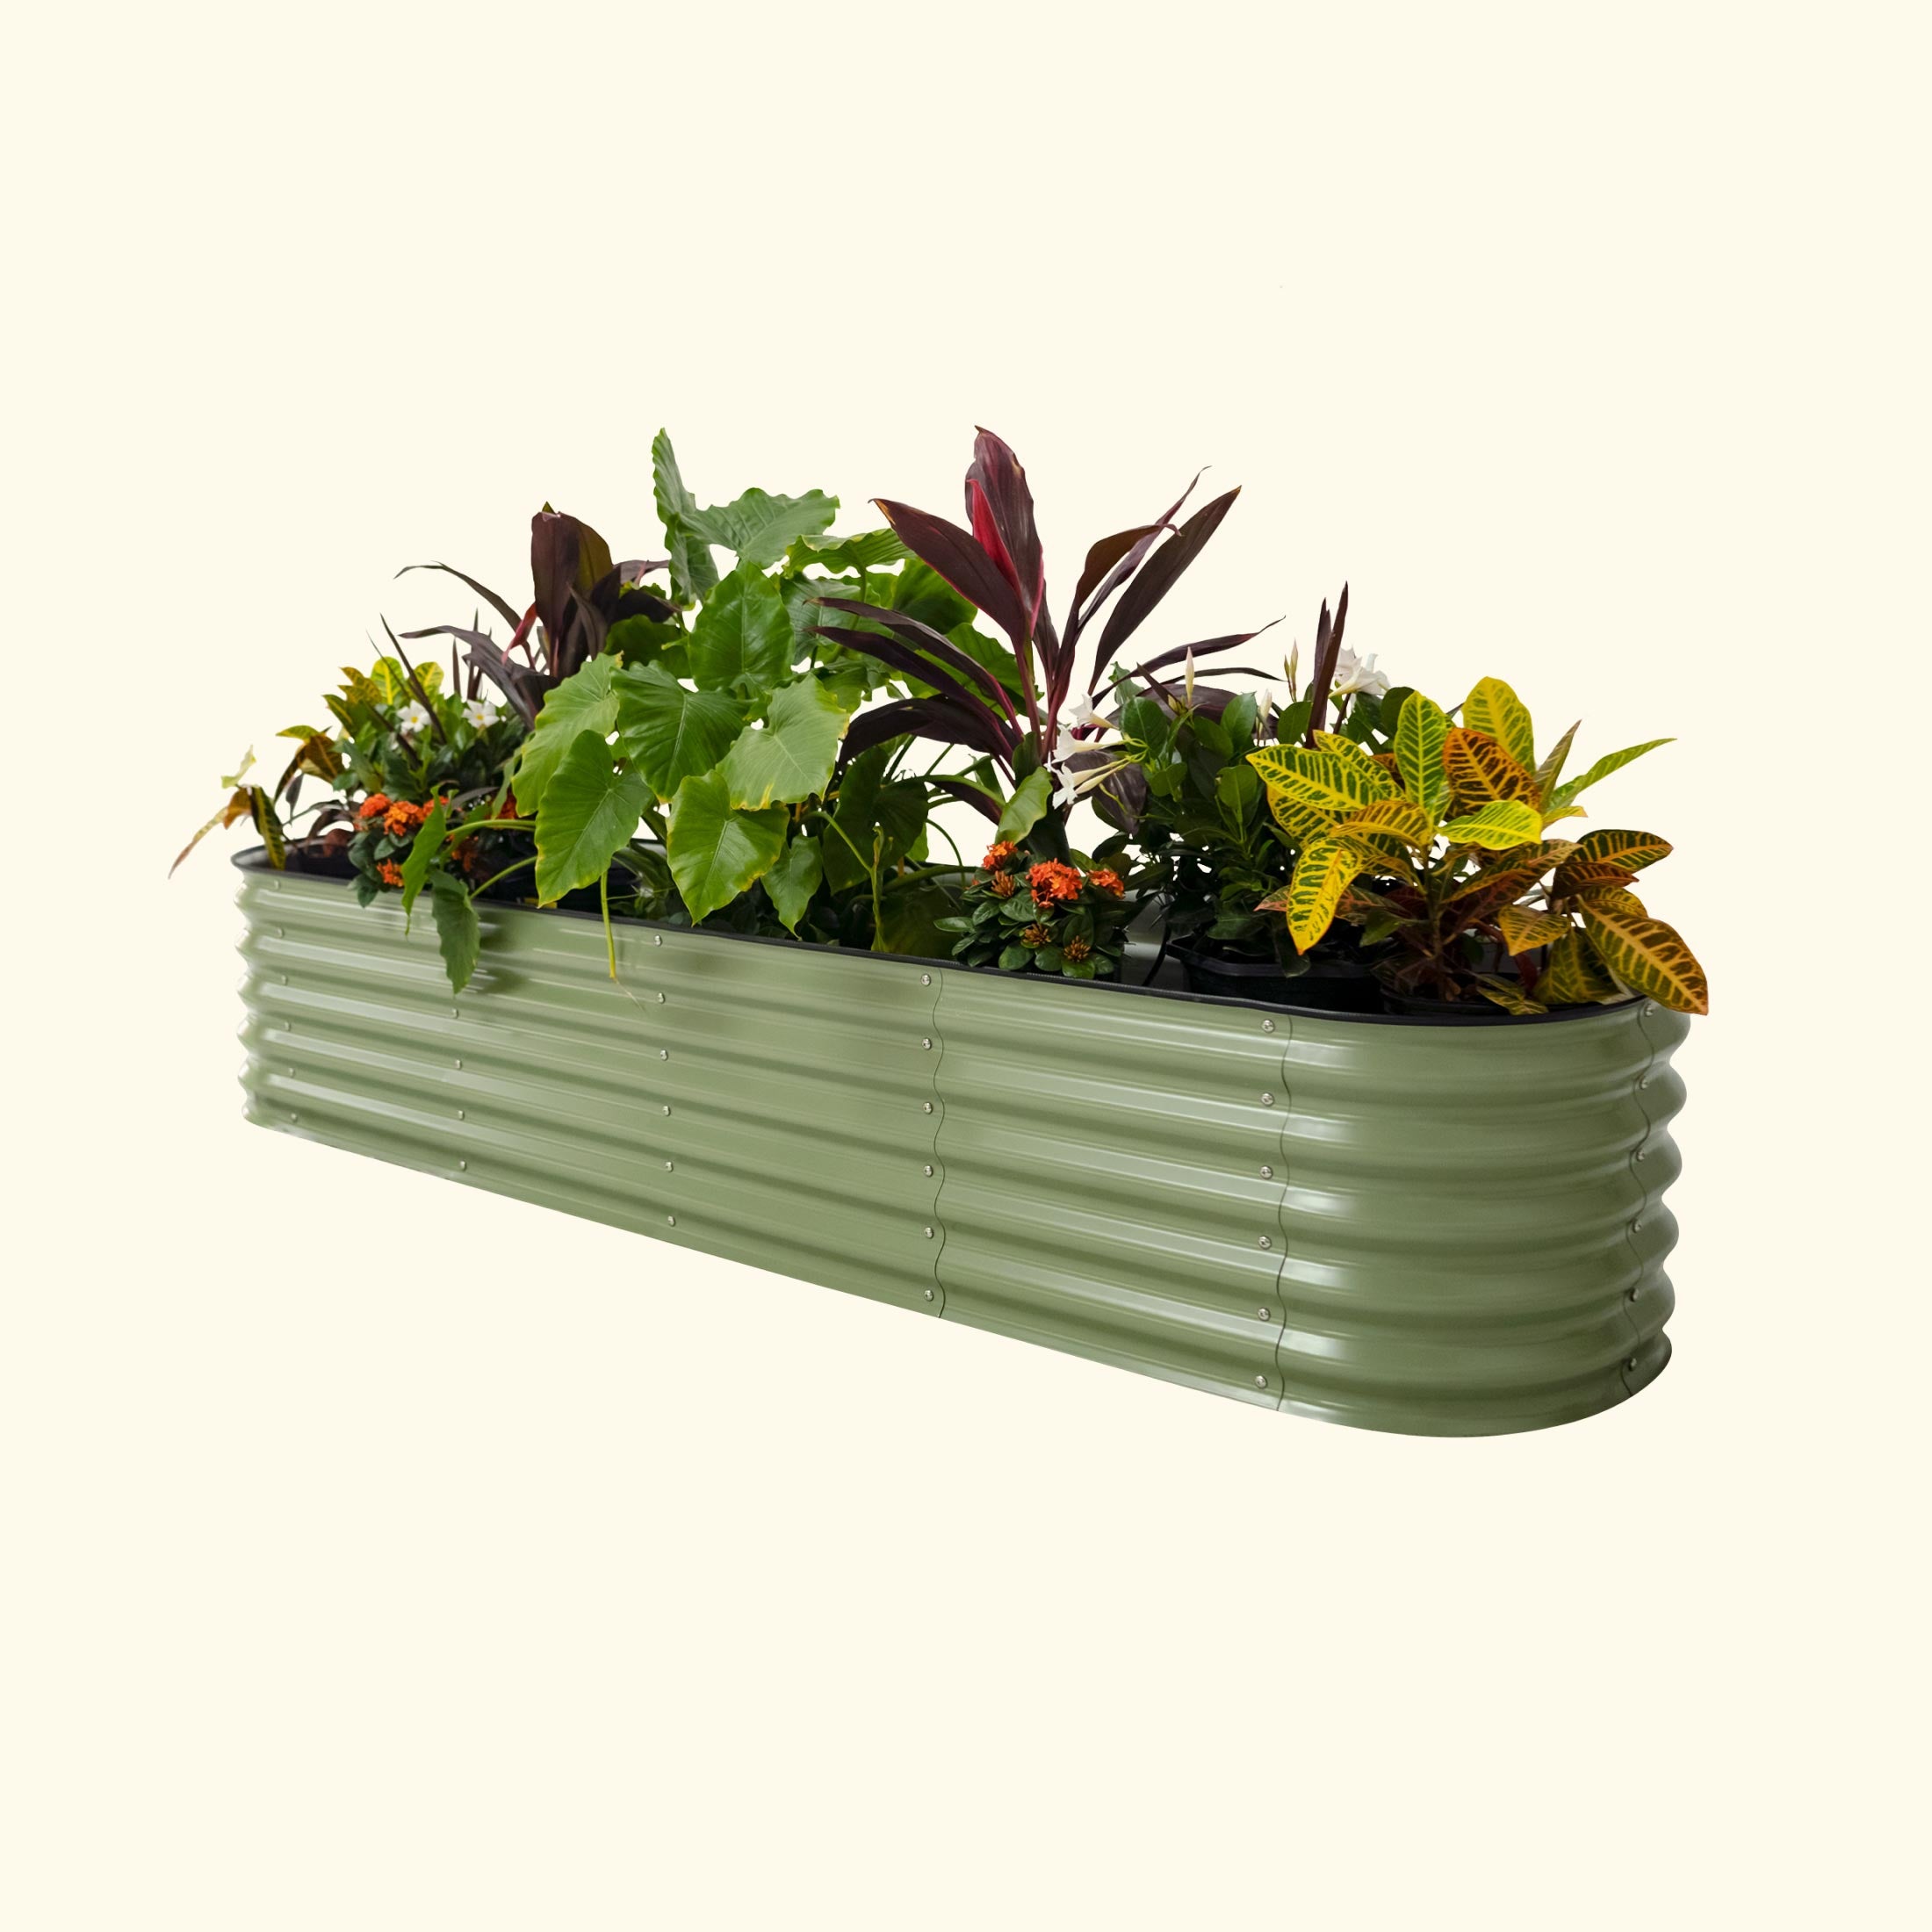 Self-Watering Garden Bed